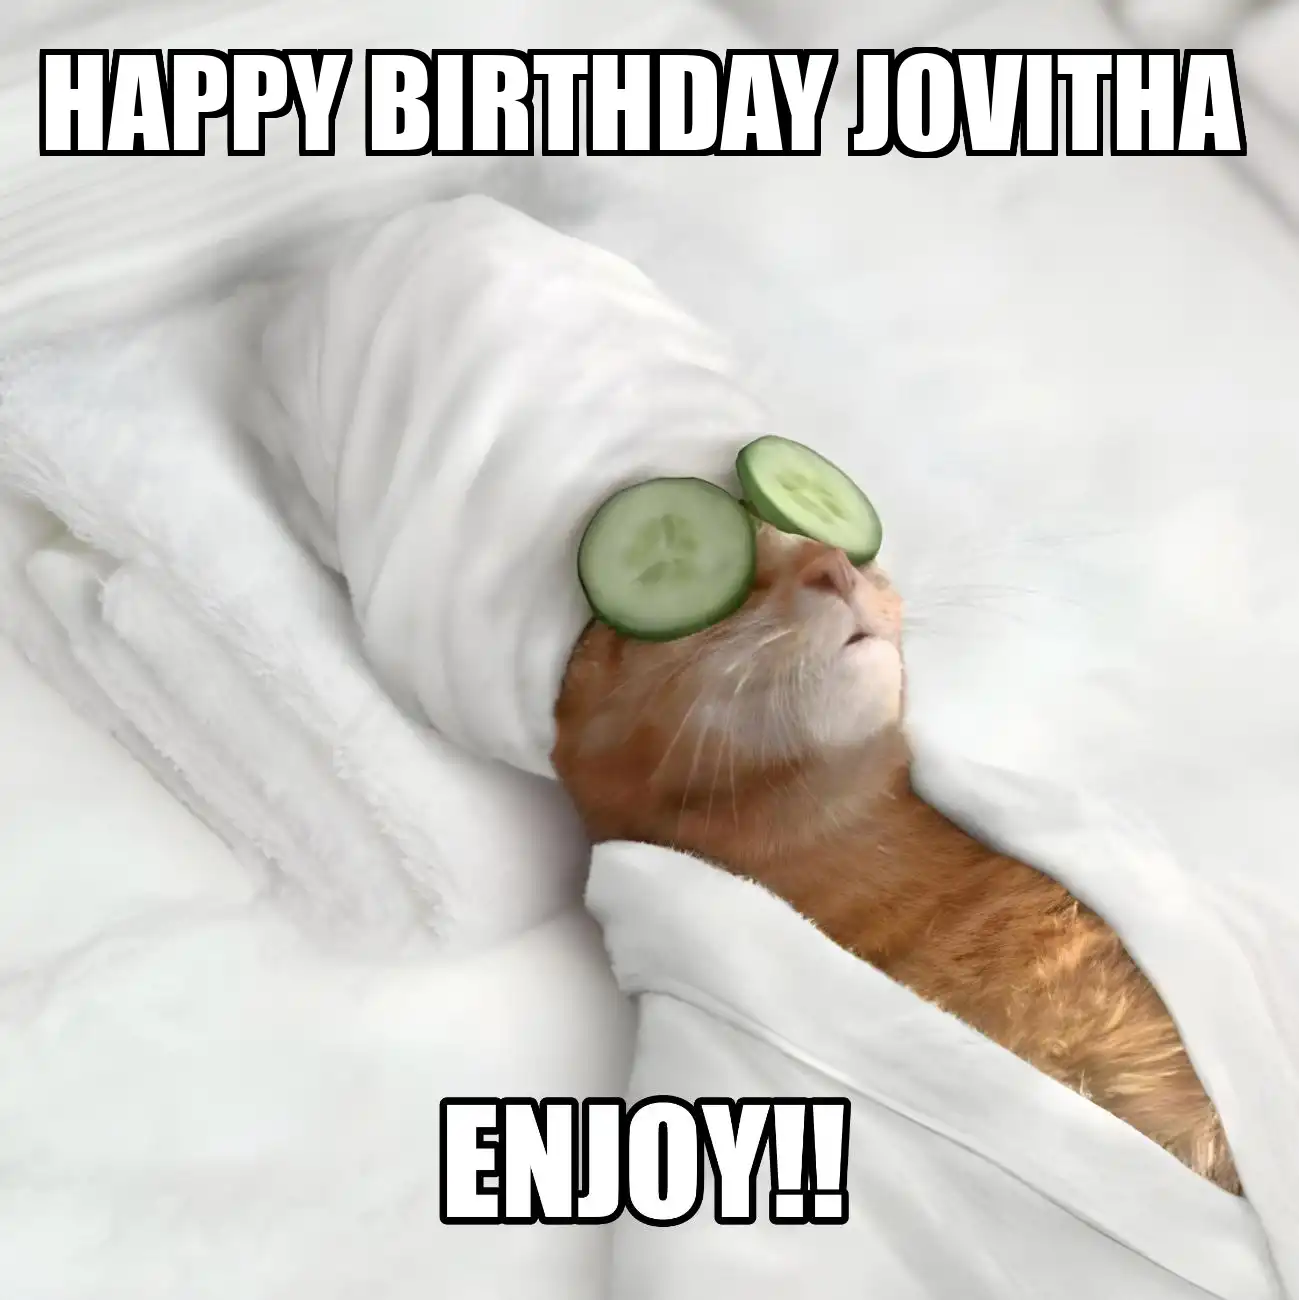 Happy Birthday Jovitha Enjoy Cat Meme